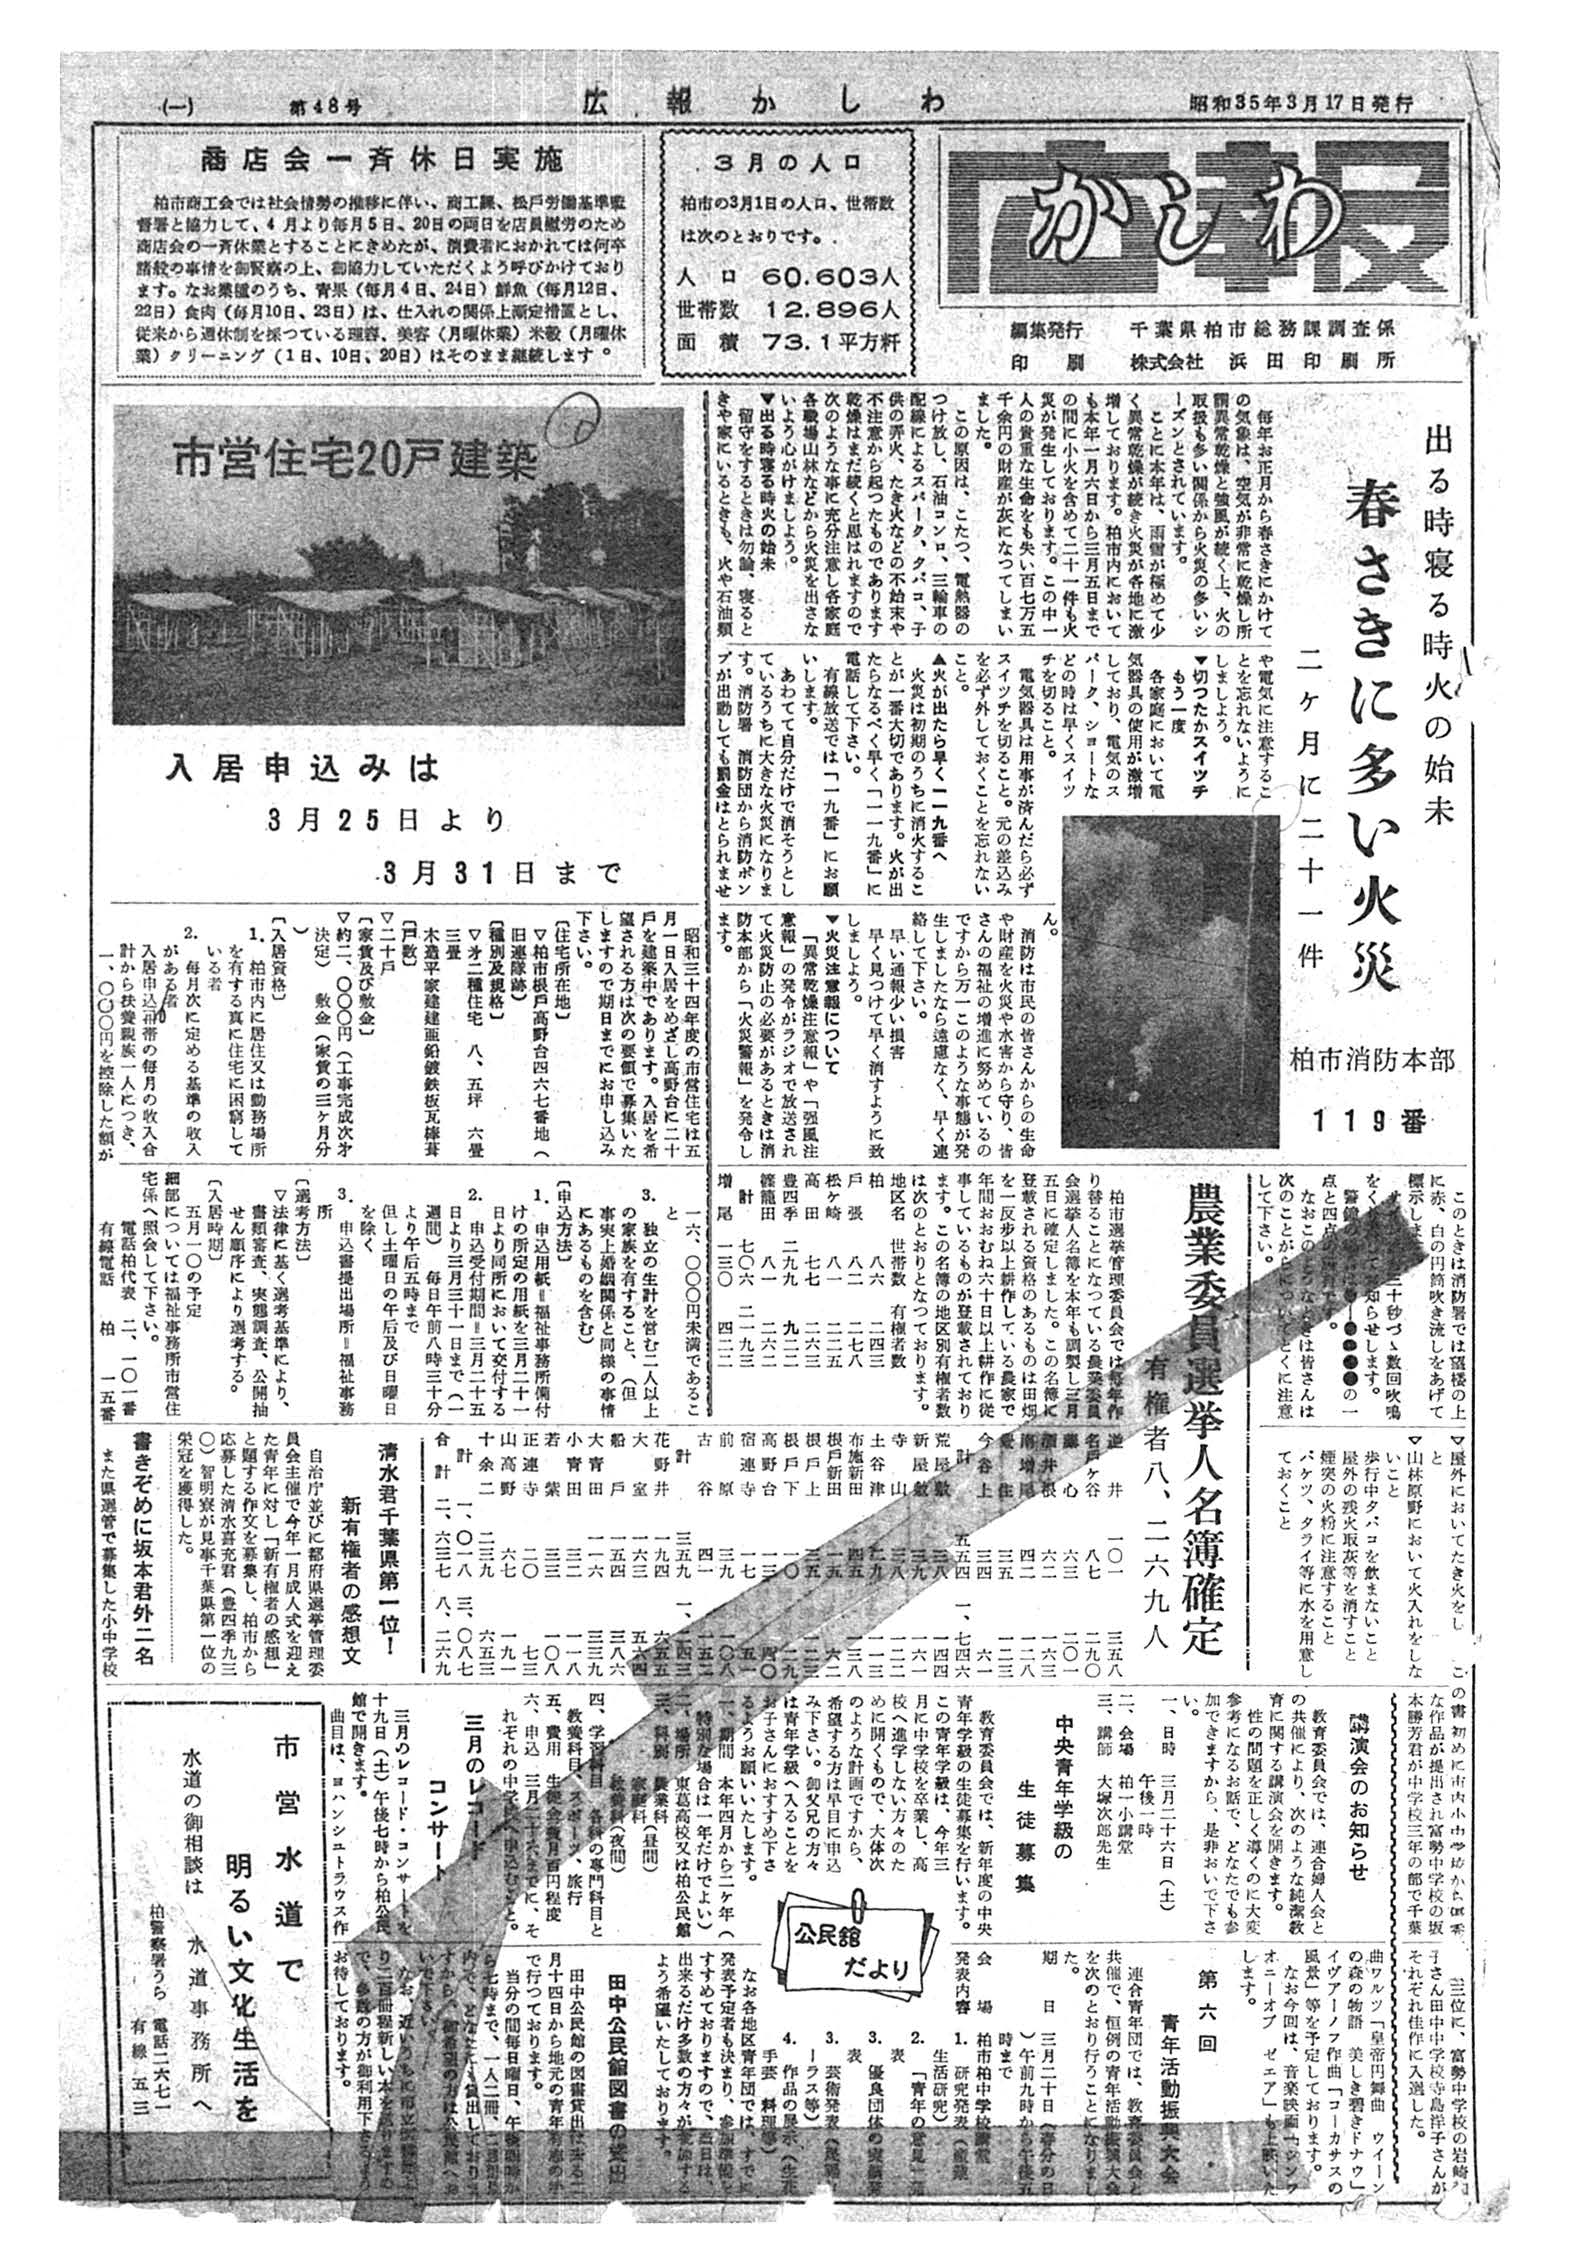 広報かしわ　昭和35年3月17日発行　48号